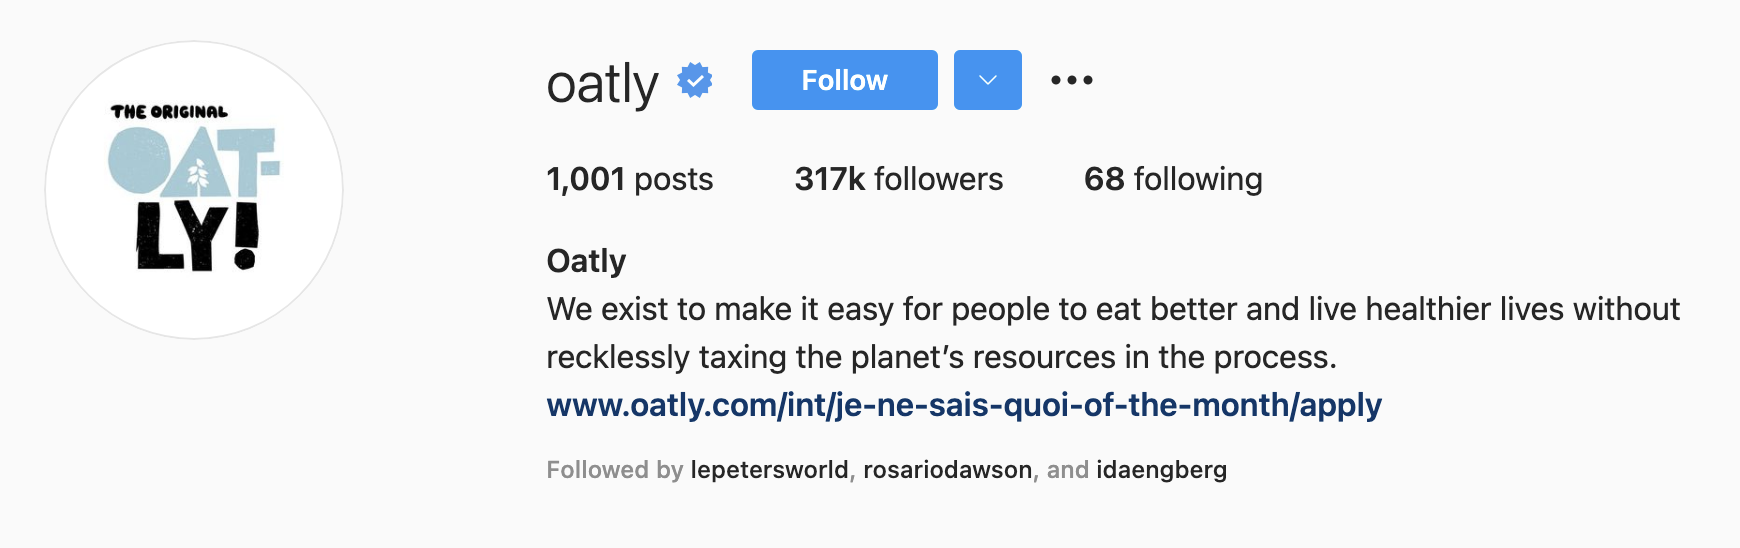 Oatly Instagram profile